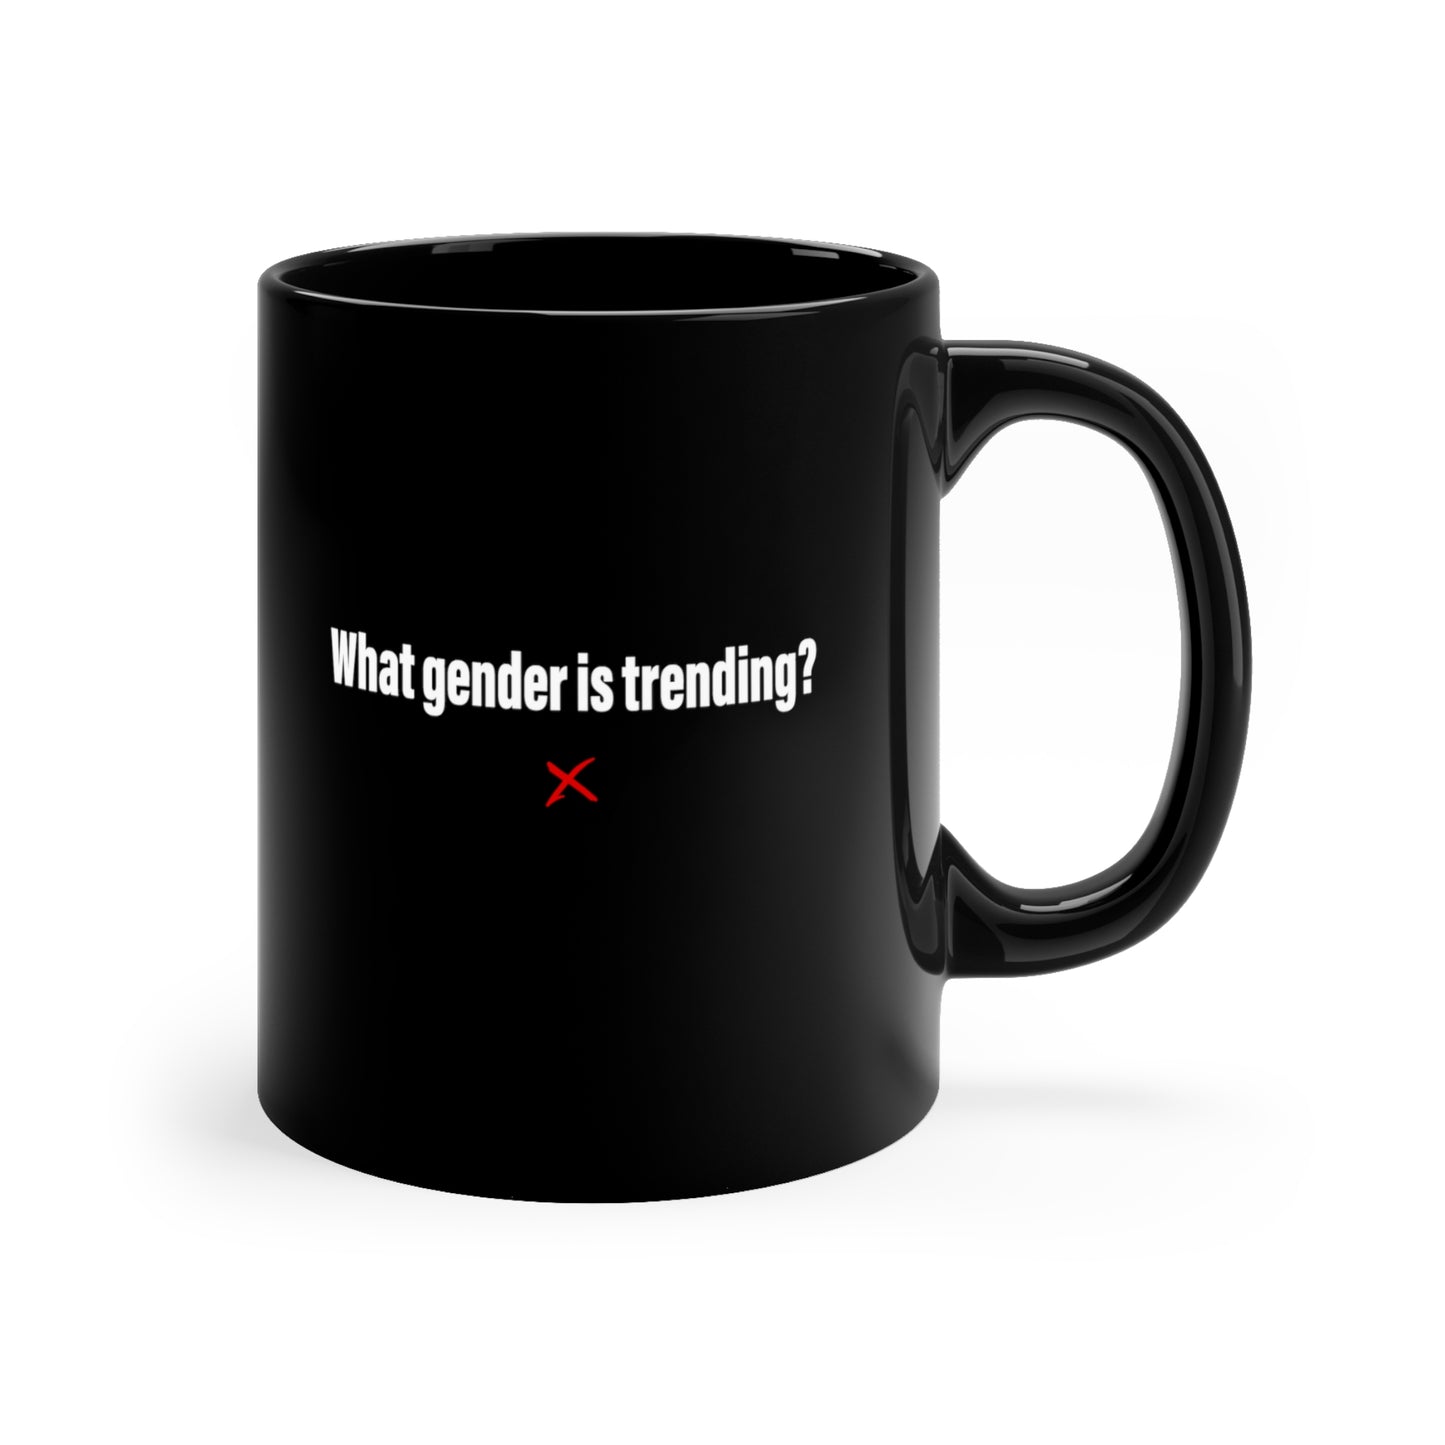 What gender is trending? - Mug